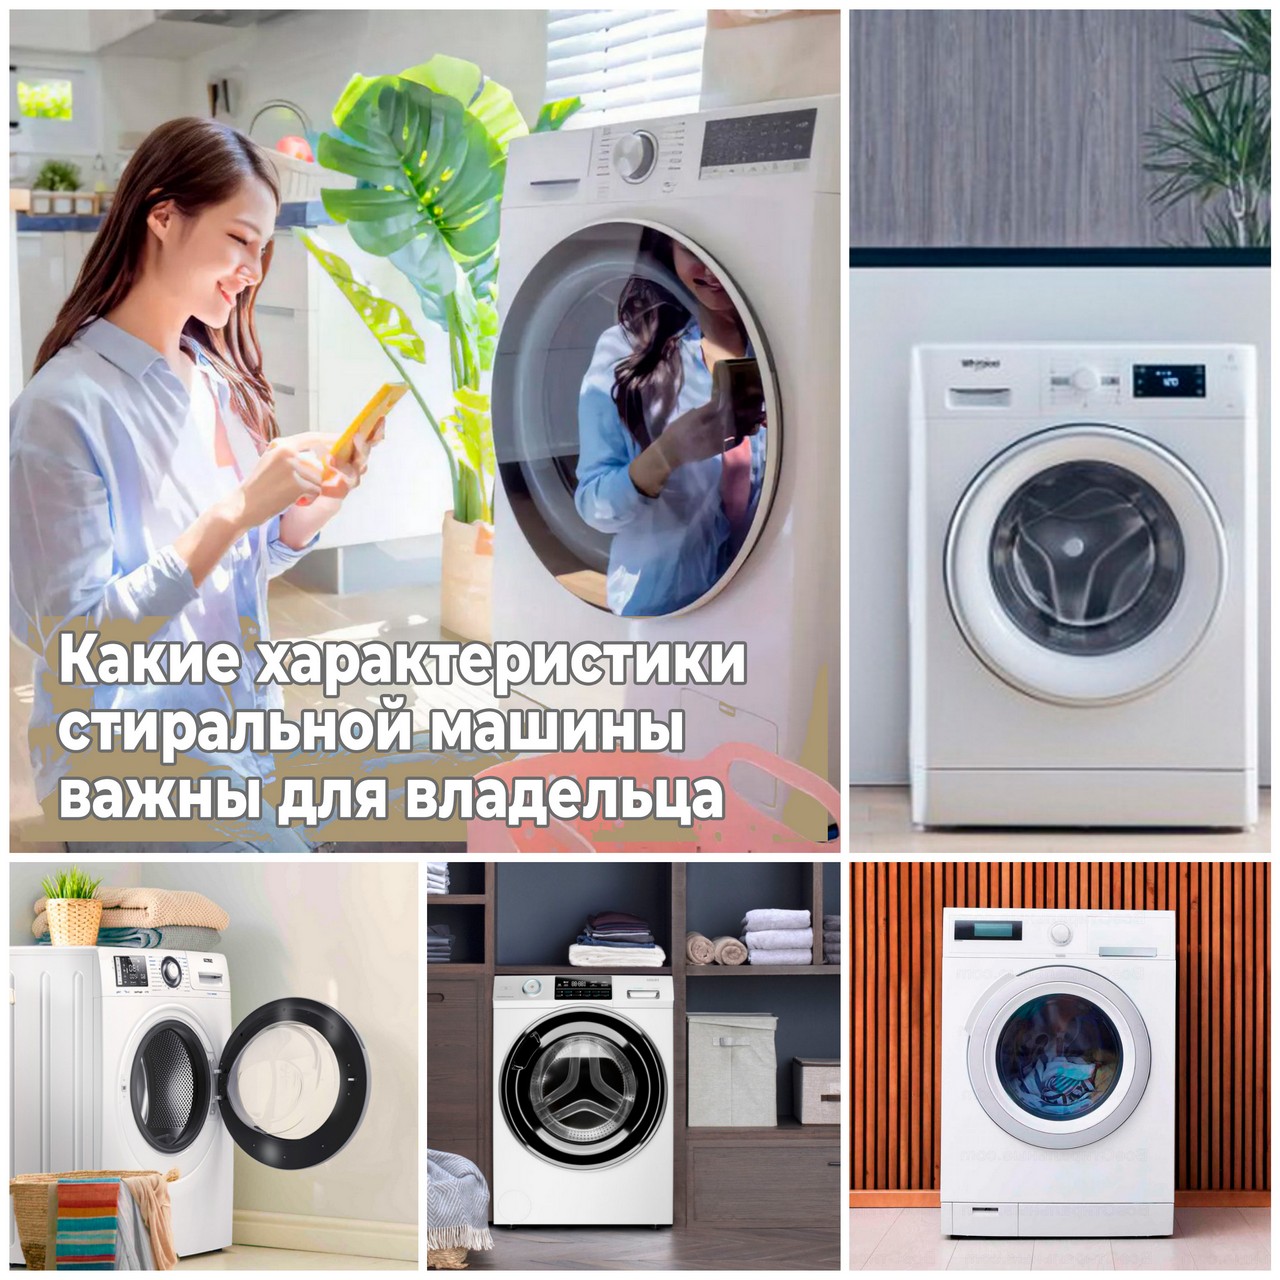 Какие характеристики стиральной машины важны для владельца